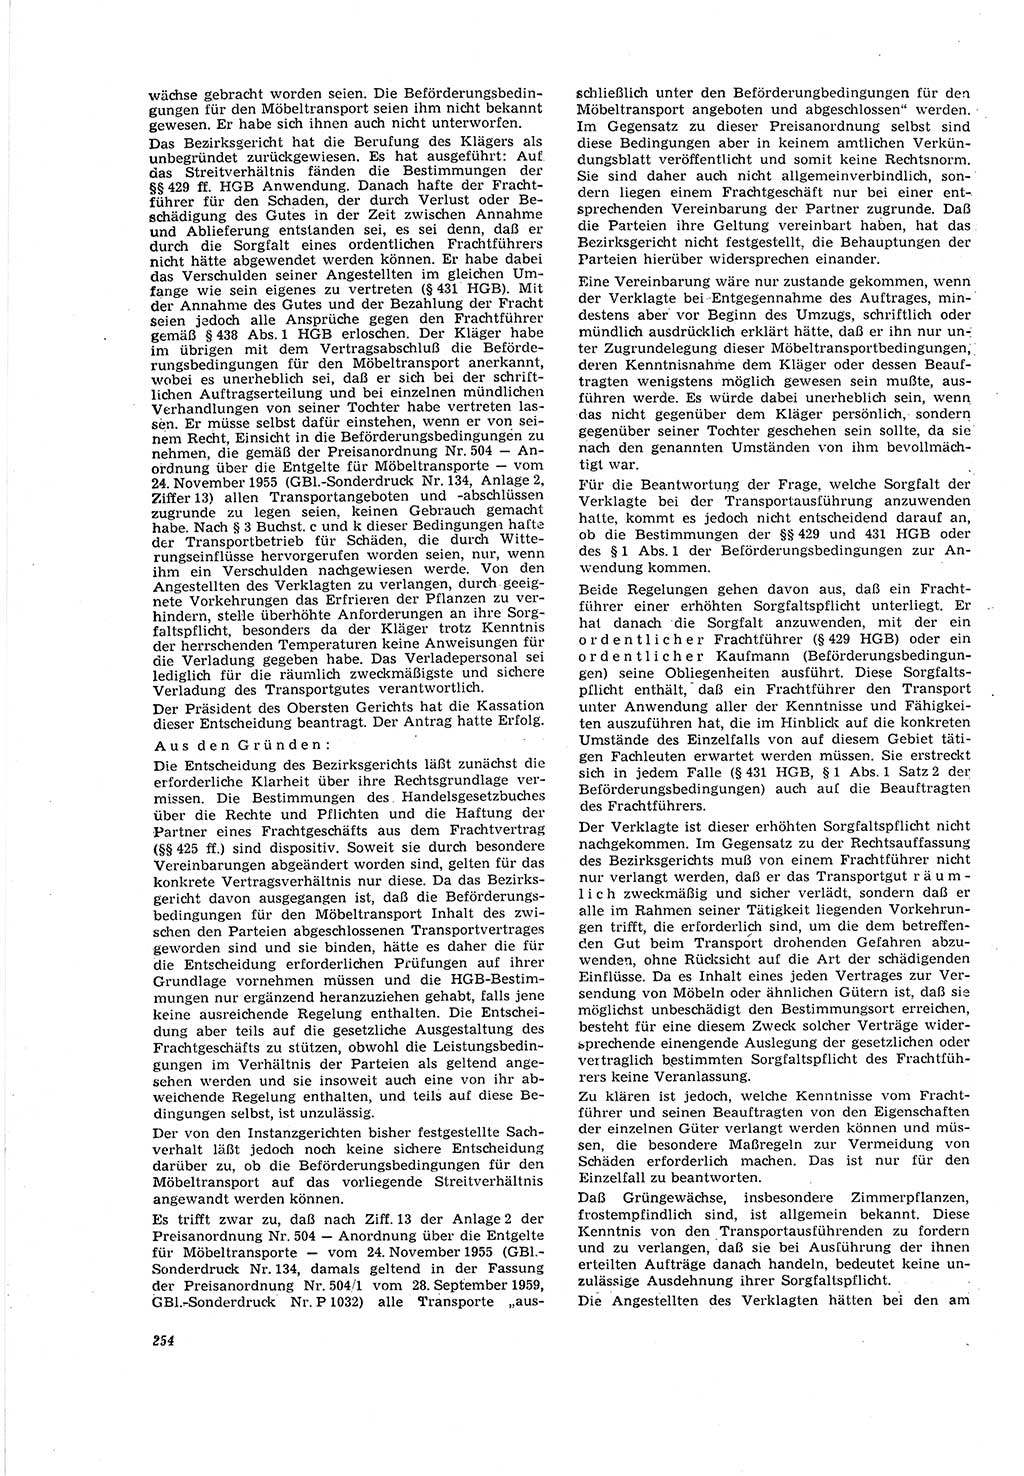 Neue Justiz (NJ), Zeitschrift für Recht und Rechtswissenschaft [Deutsche Demokratische Republik (DDR)], 20. Jahrgang 1966, Seite 254 (NJ DDR 1966, S. 254)